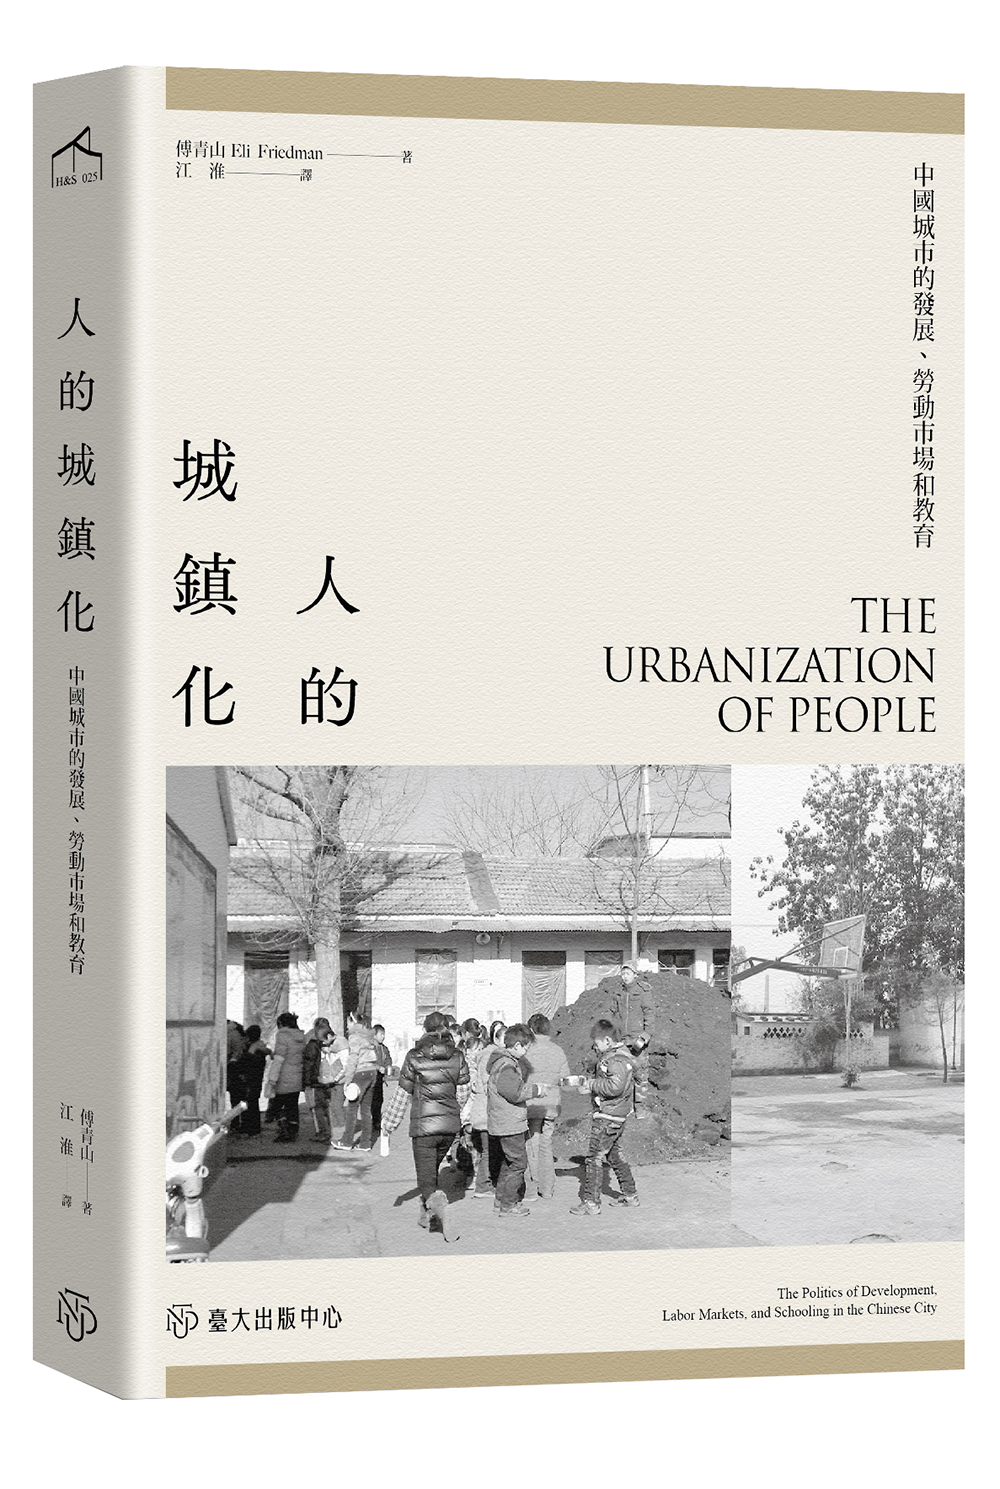 人的城鎮化──中國城市的發展、勞動市場和教育